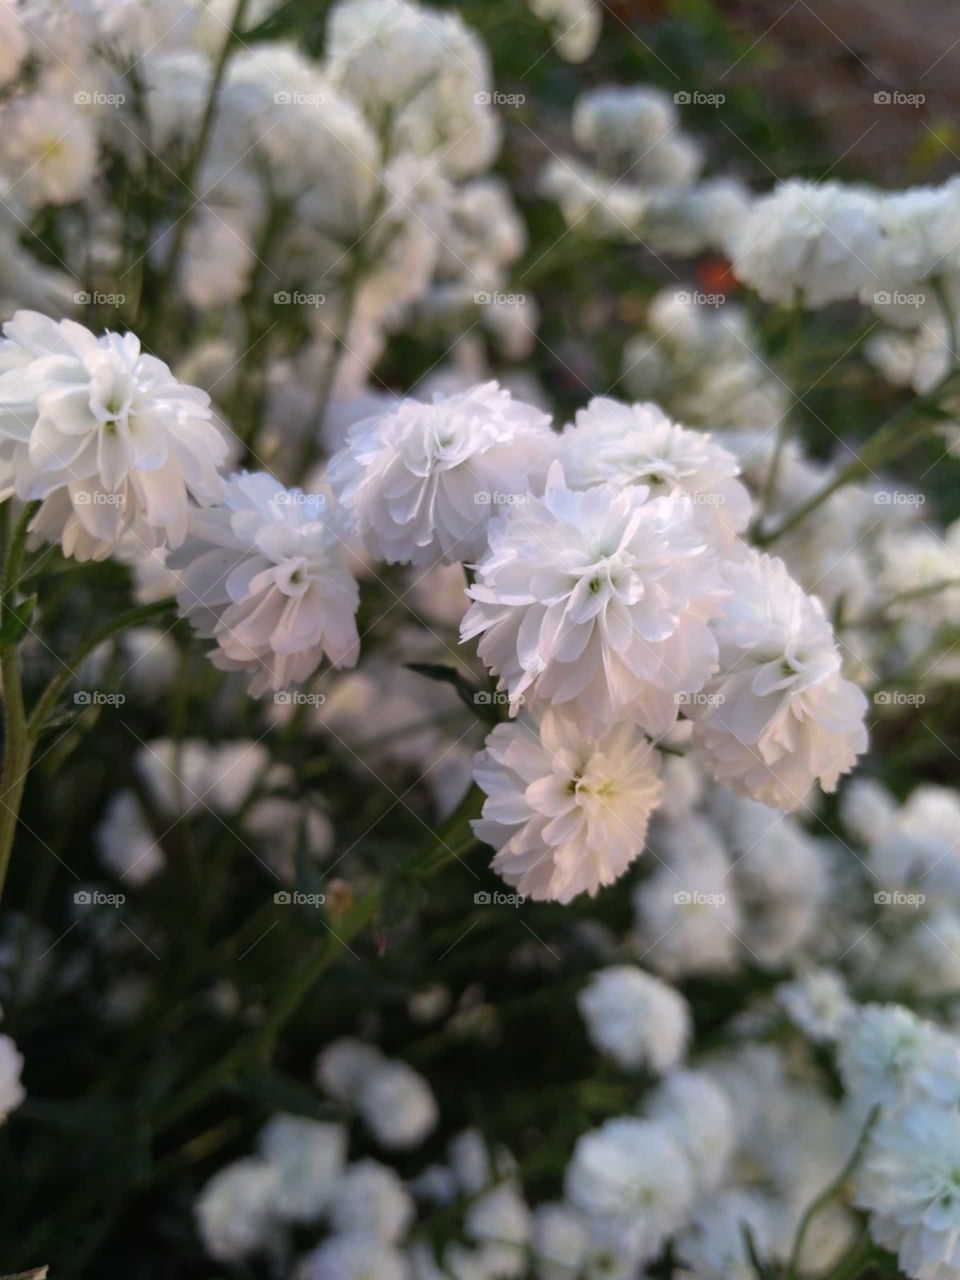 Cute white flowers